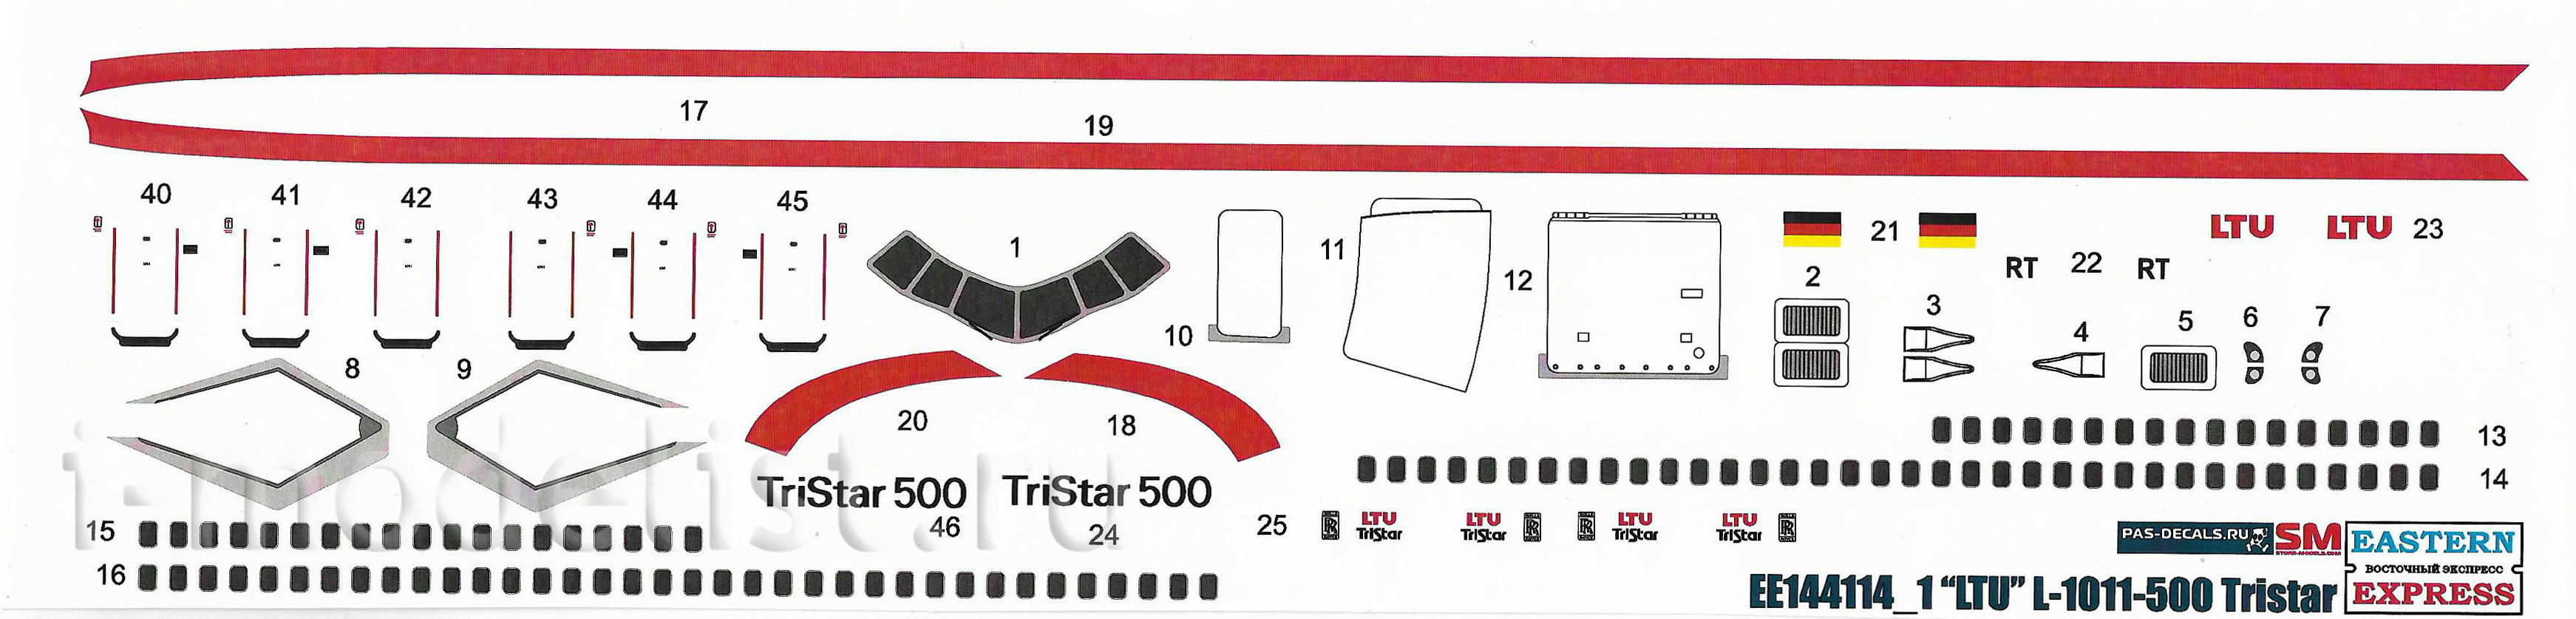 144114-1 Восточный Экспресс 1/144 Авиалайнер L-1011-500 Tristar LTU